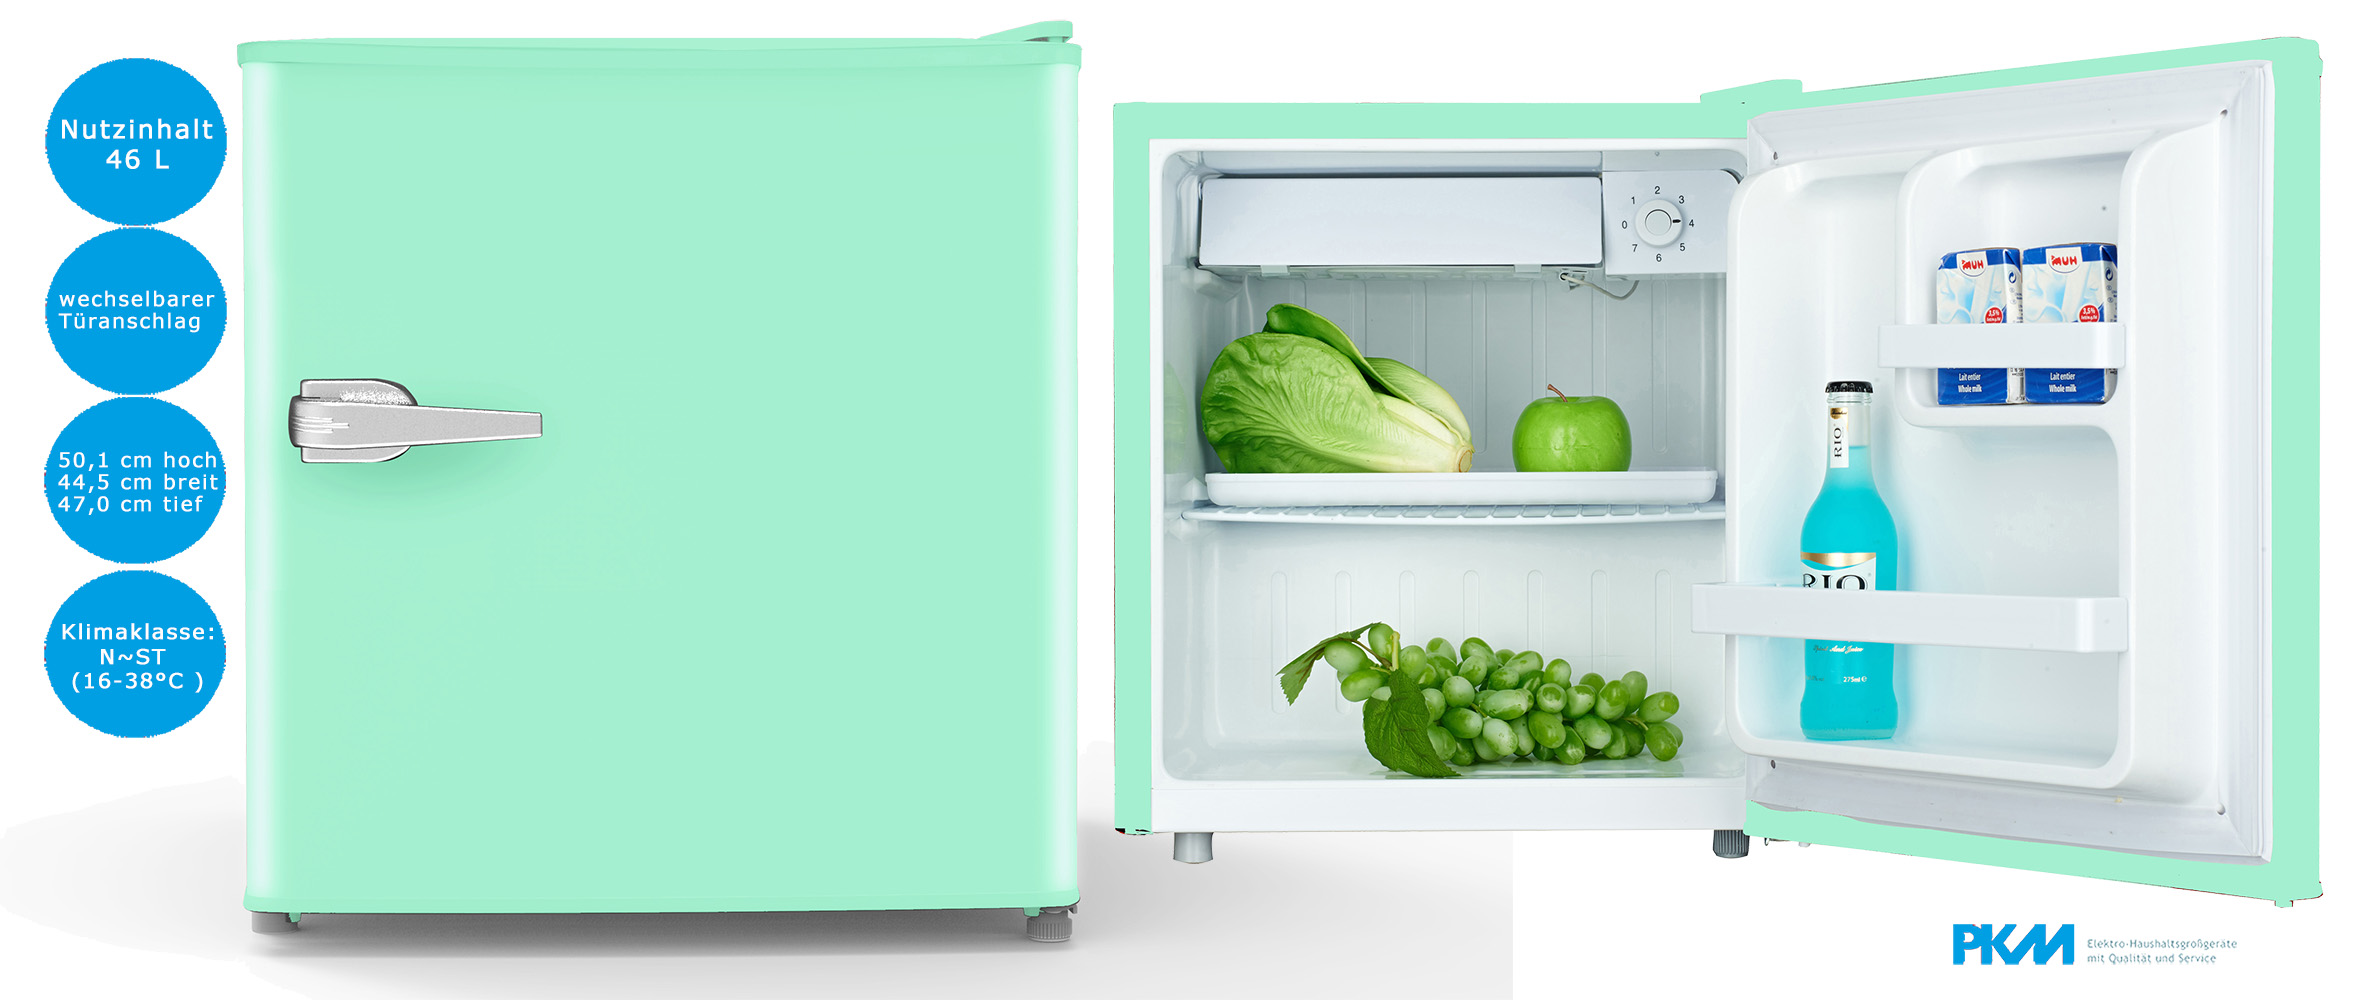 PKM Retro Mini Kühlschrank 46 Liter Türkis Kühlbox Tischkühlschrank kompakt, freistehende Kühlschränke, Kühlschrank, Kühlen & Gefrieren